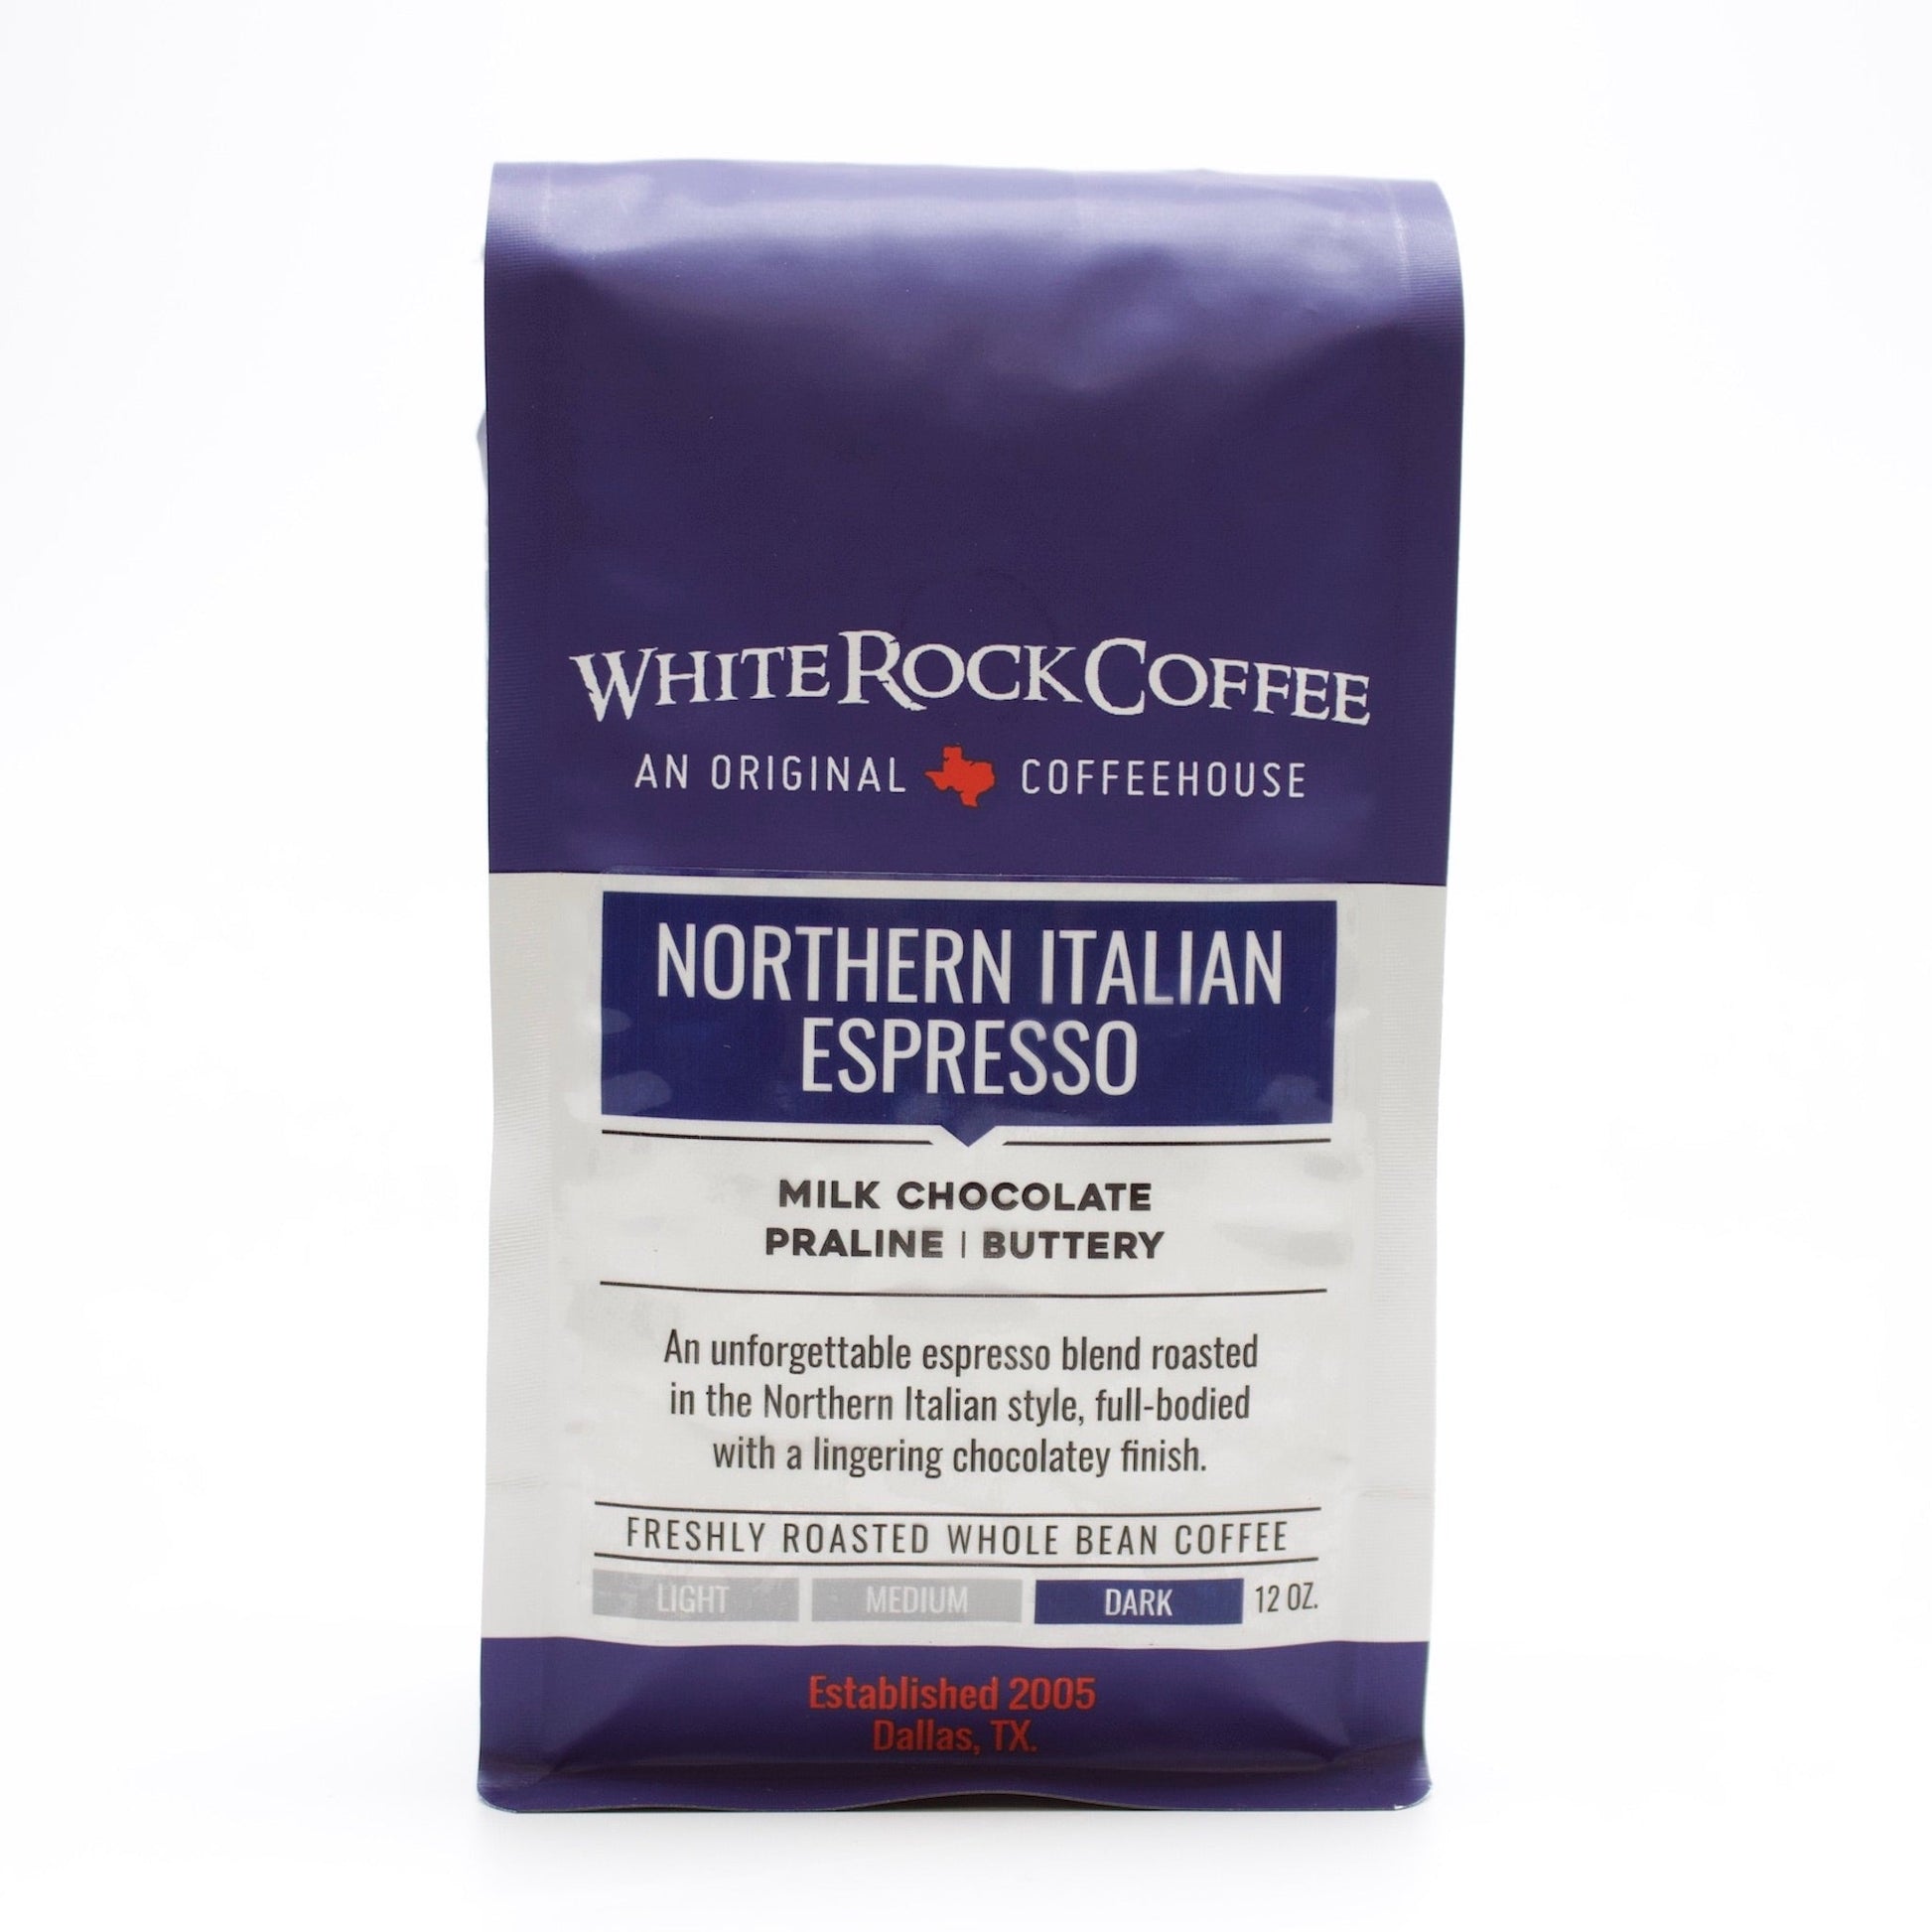 Northern Italian Espresso - White Rock Coffee